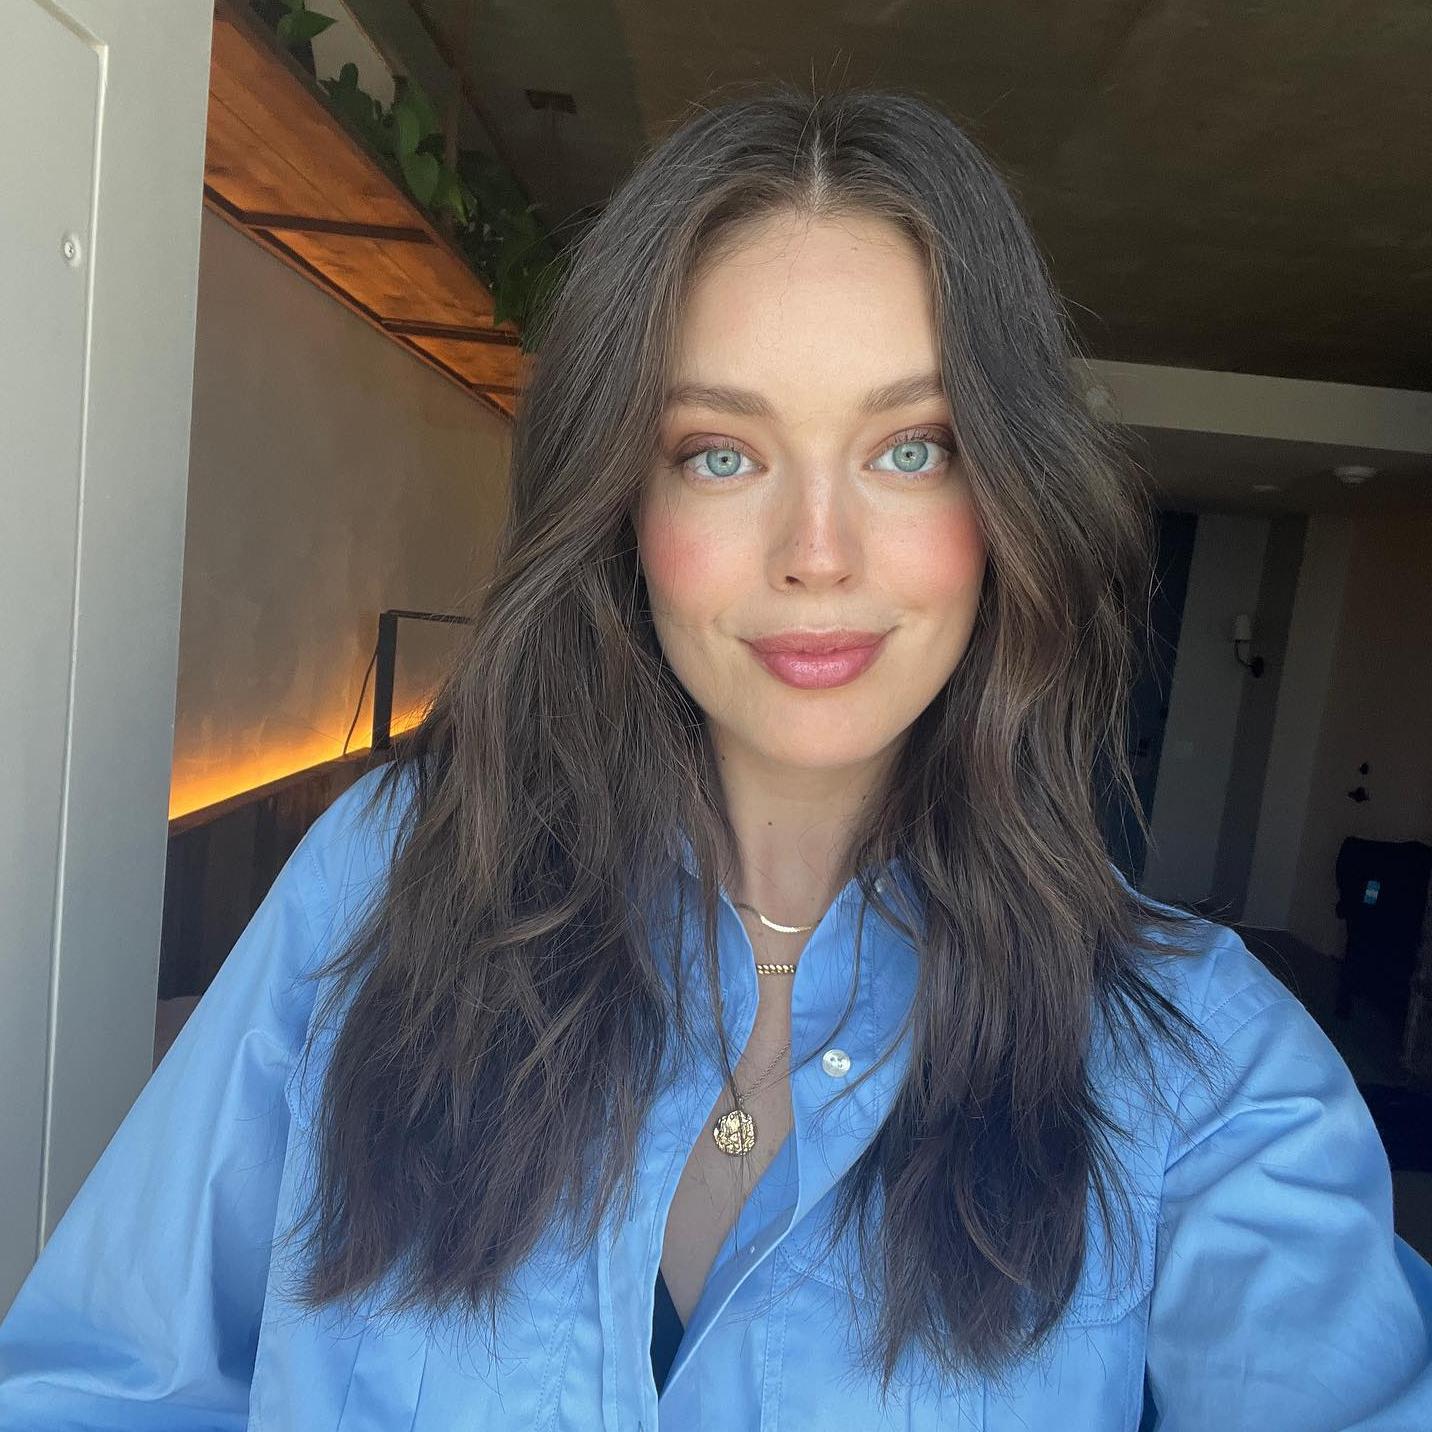 La modelo Emily DiDonato posa en un selfie con un maquillaje natural y las mejillas ligeramente marcadas. Luce el pelo suelo con melena midi ligeramente ondulada para darle volumen.